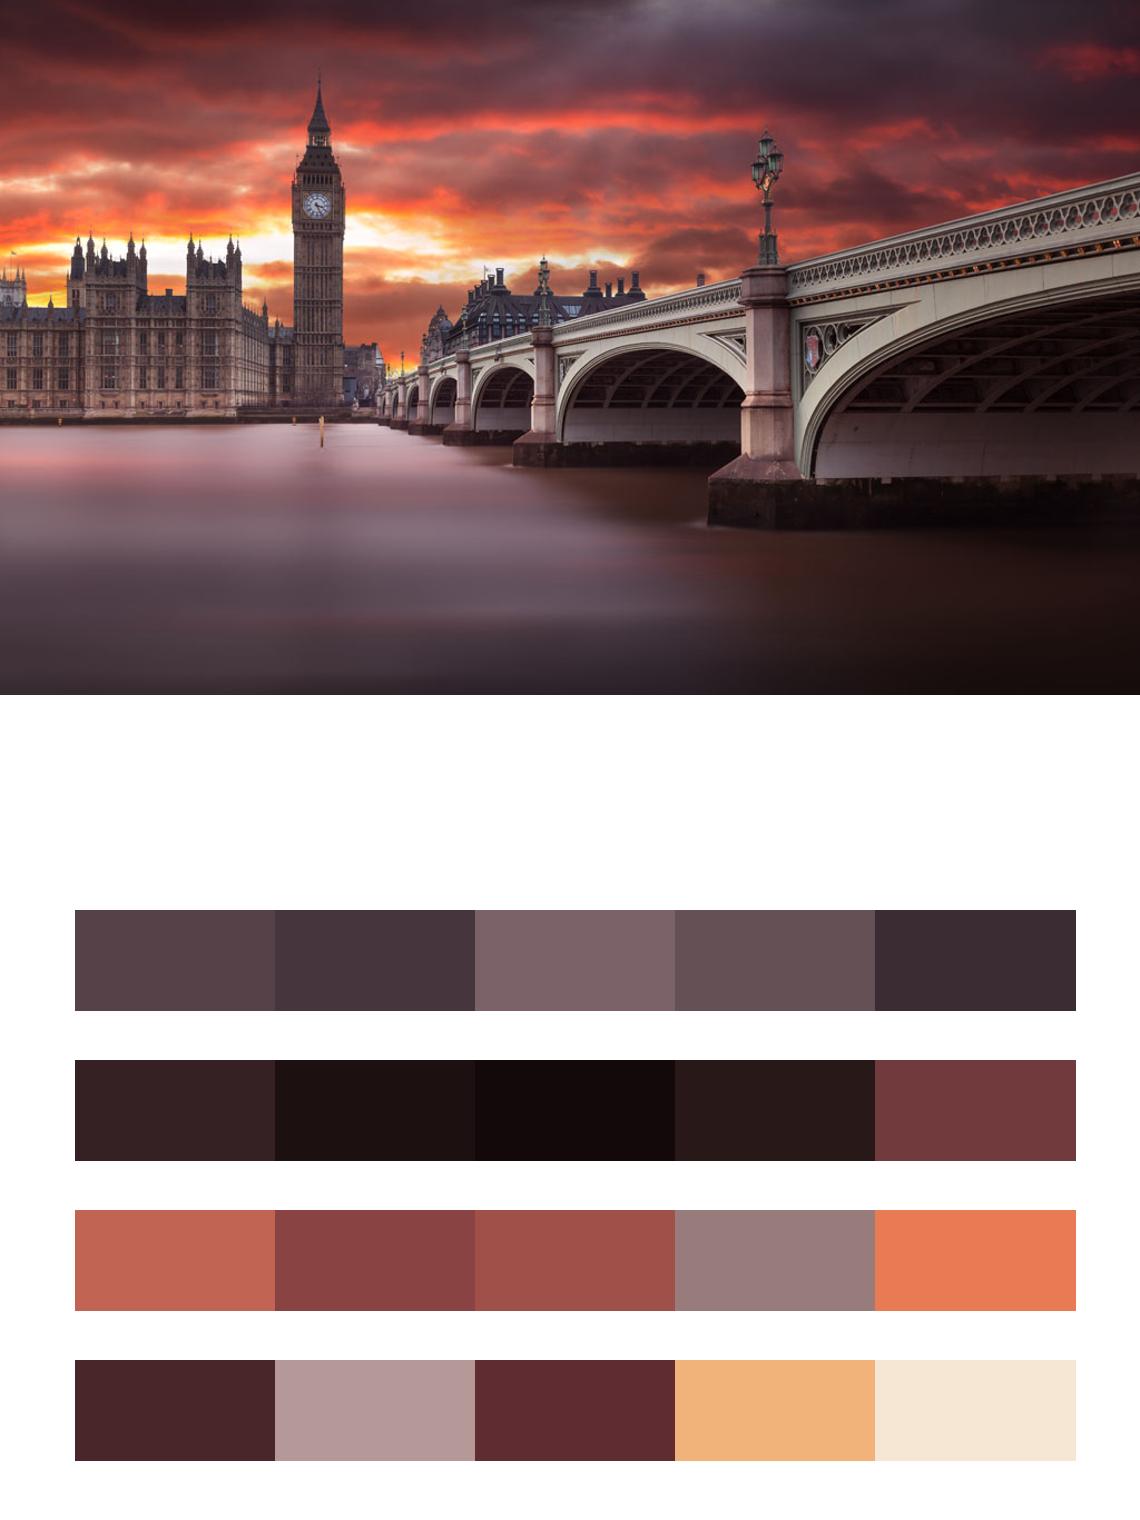 Лондон на фоне заката цвета